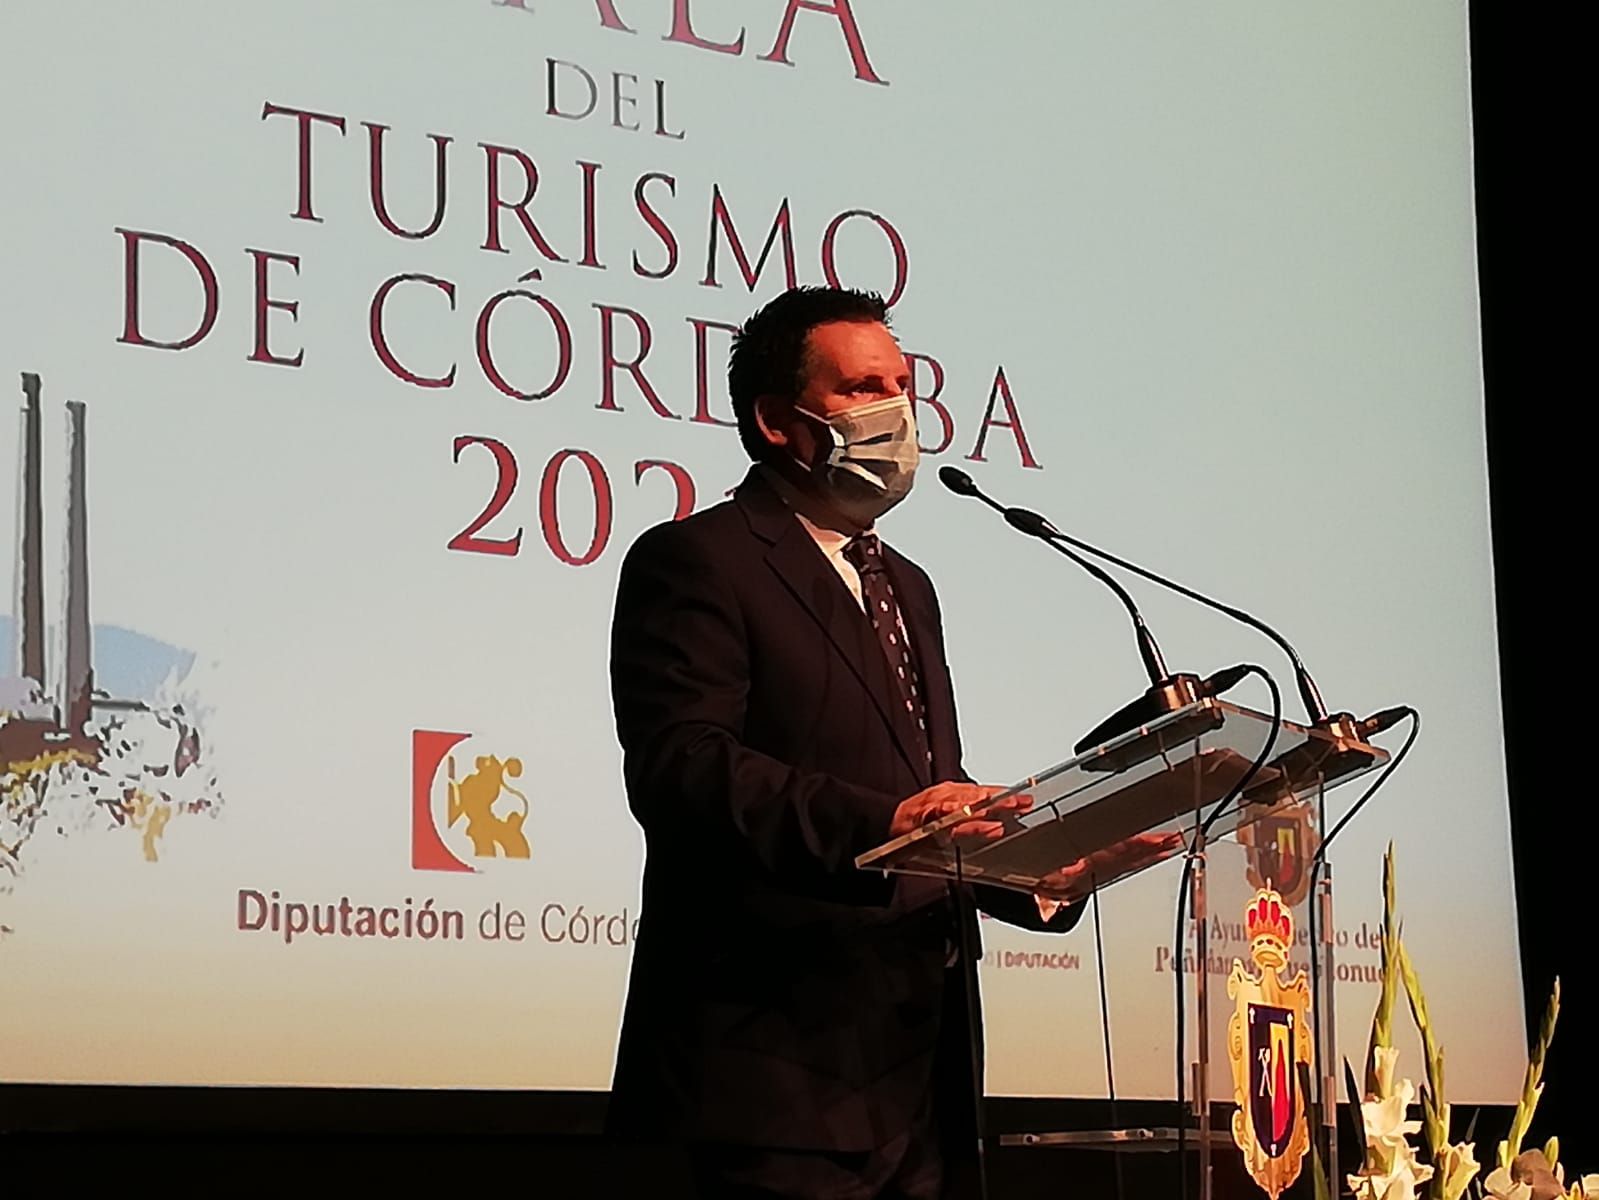 Gala del Turismo de la Provincia de Córdoba